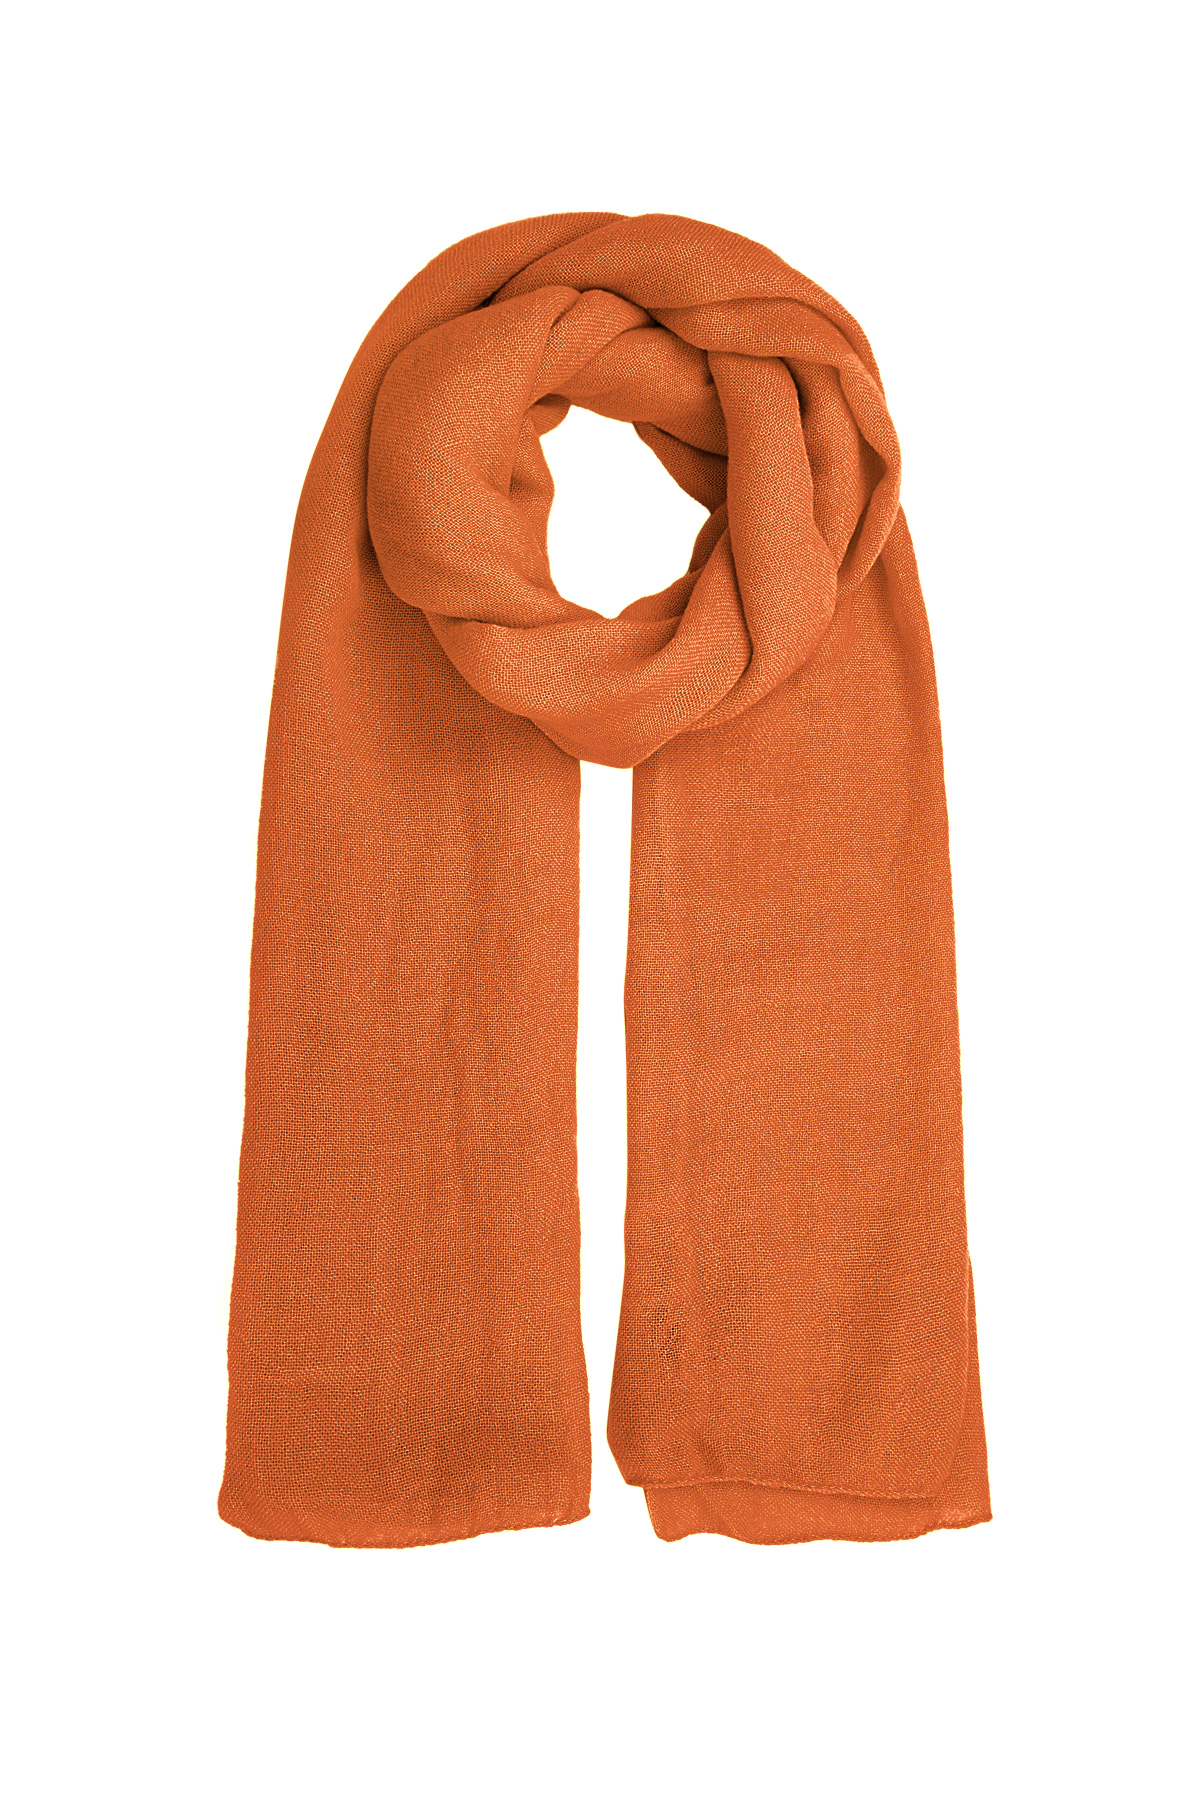 Sjaal effen kleur - oranje h5 